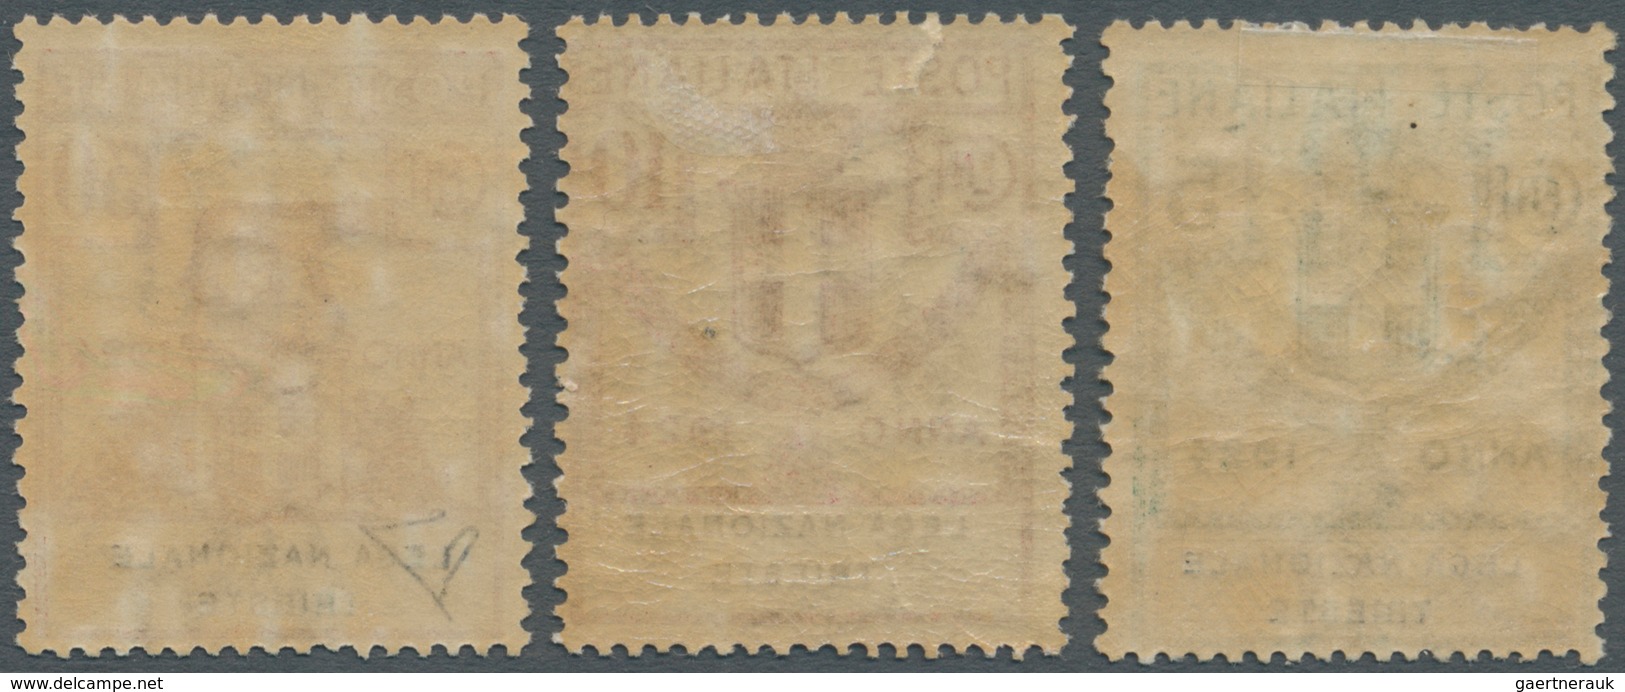 Italien - Portofreiheitsmarken: 1924, LEGA NAZIONALE TRIESTE Issue Three Values 5c. , 10c. And 30c. - Zonder Portkosten